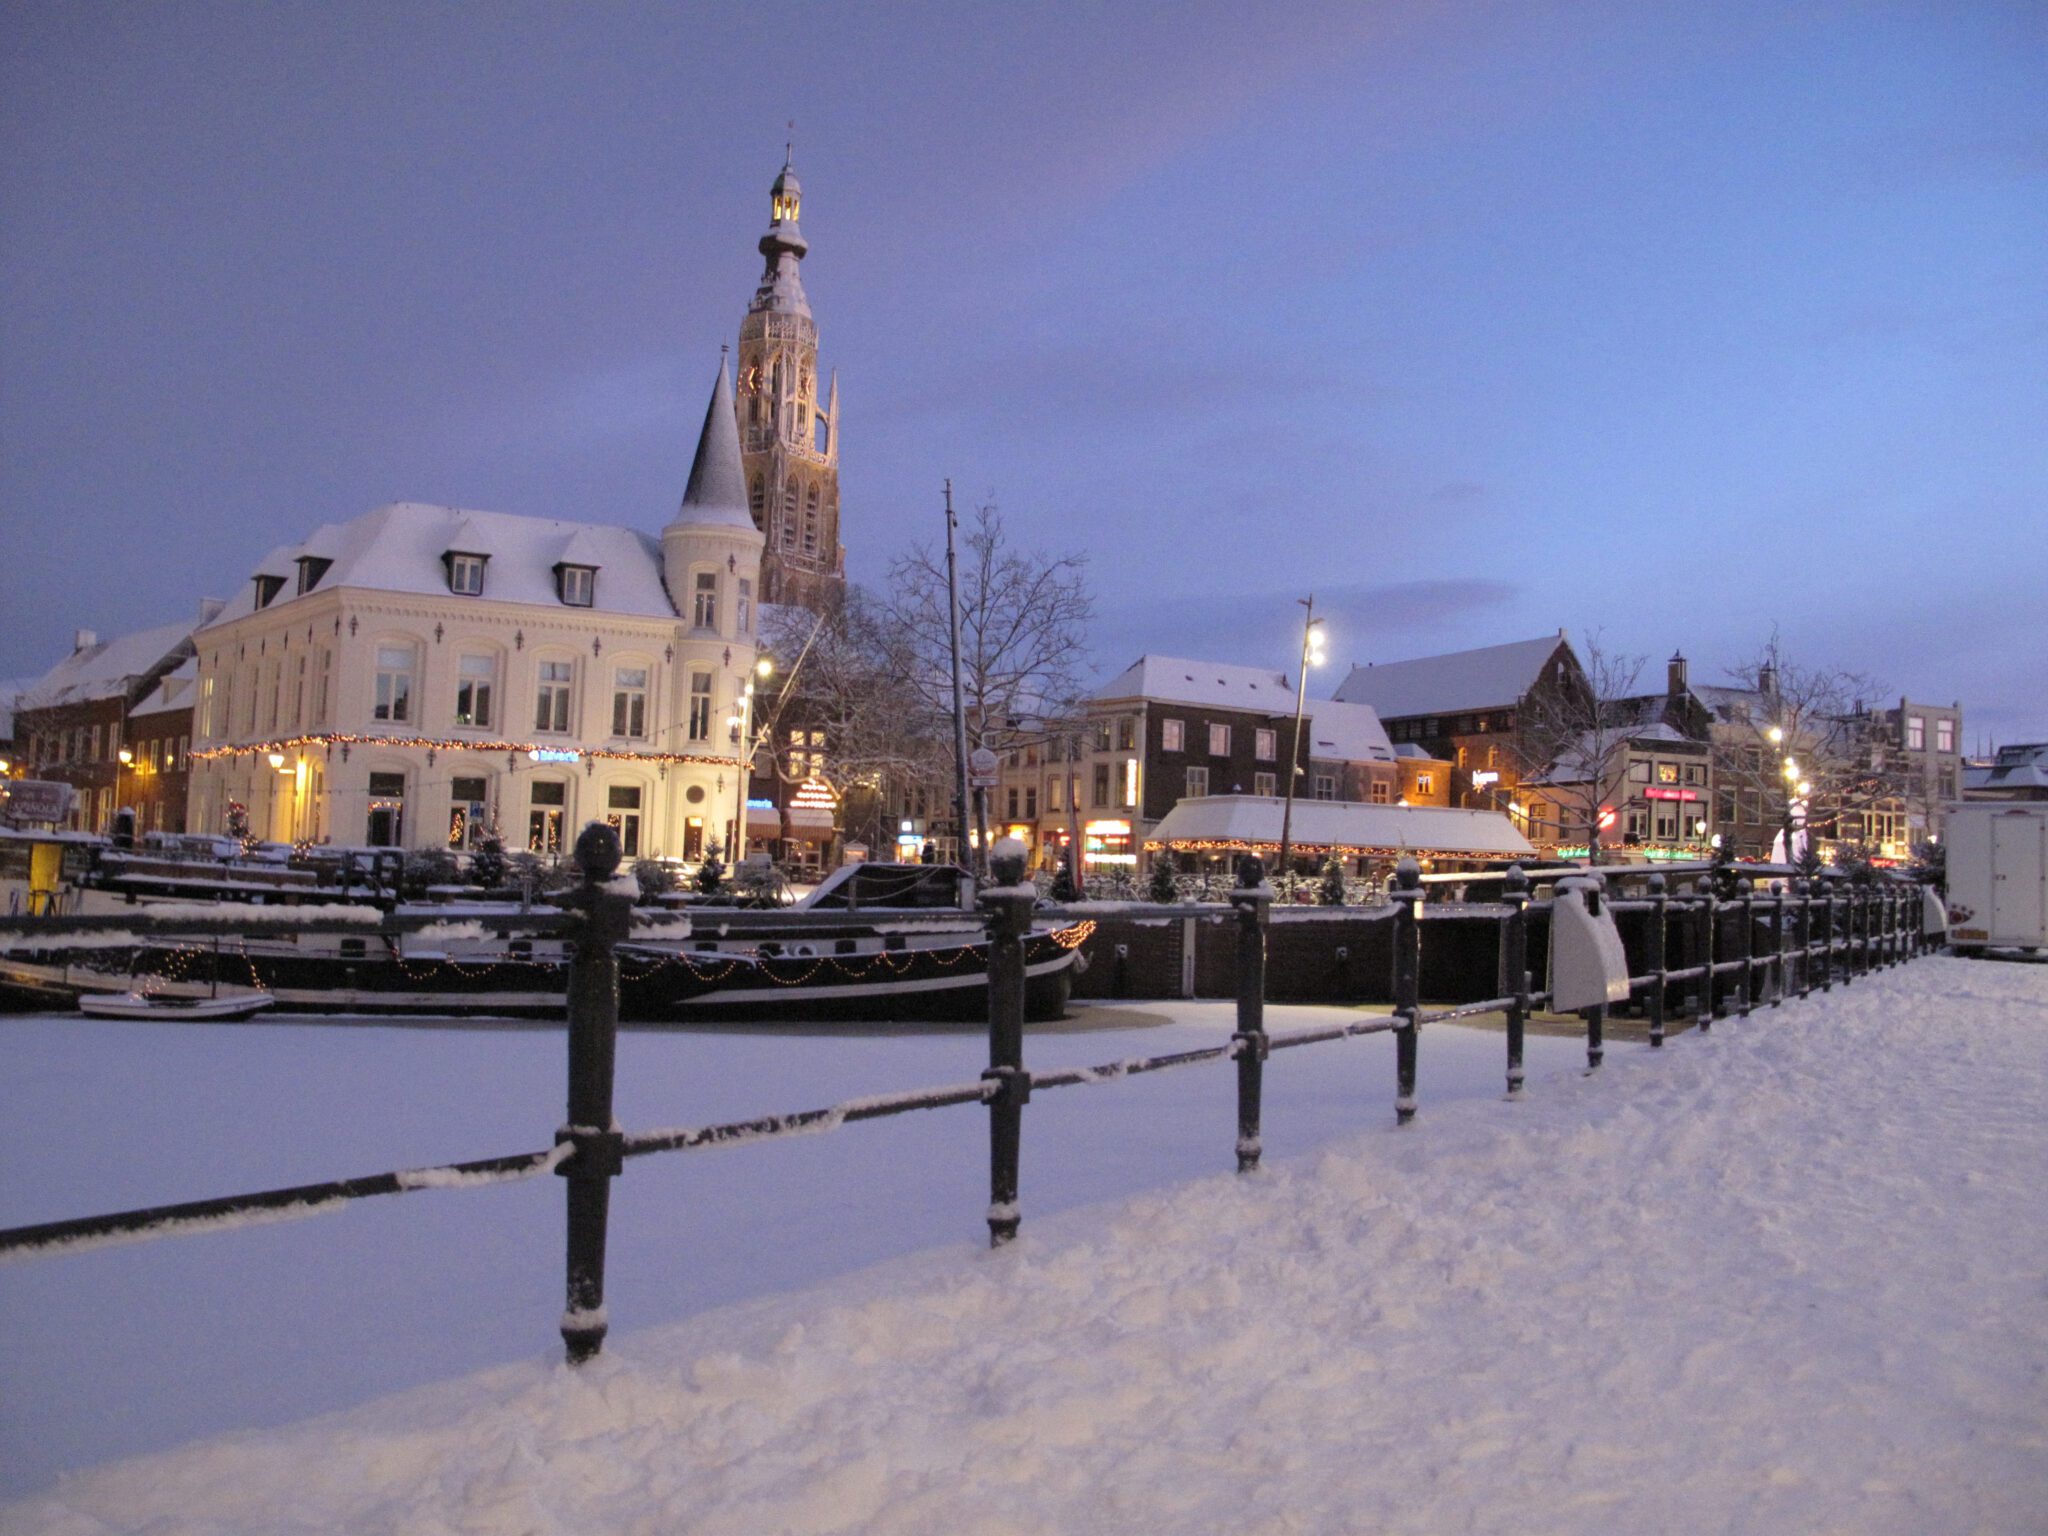 Winteractiviteiten in Breda | Beleef Breda